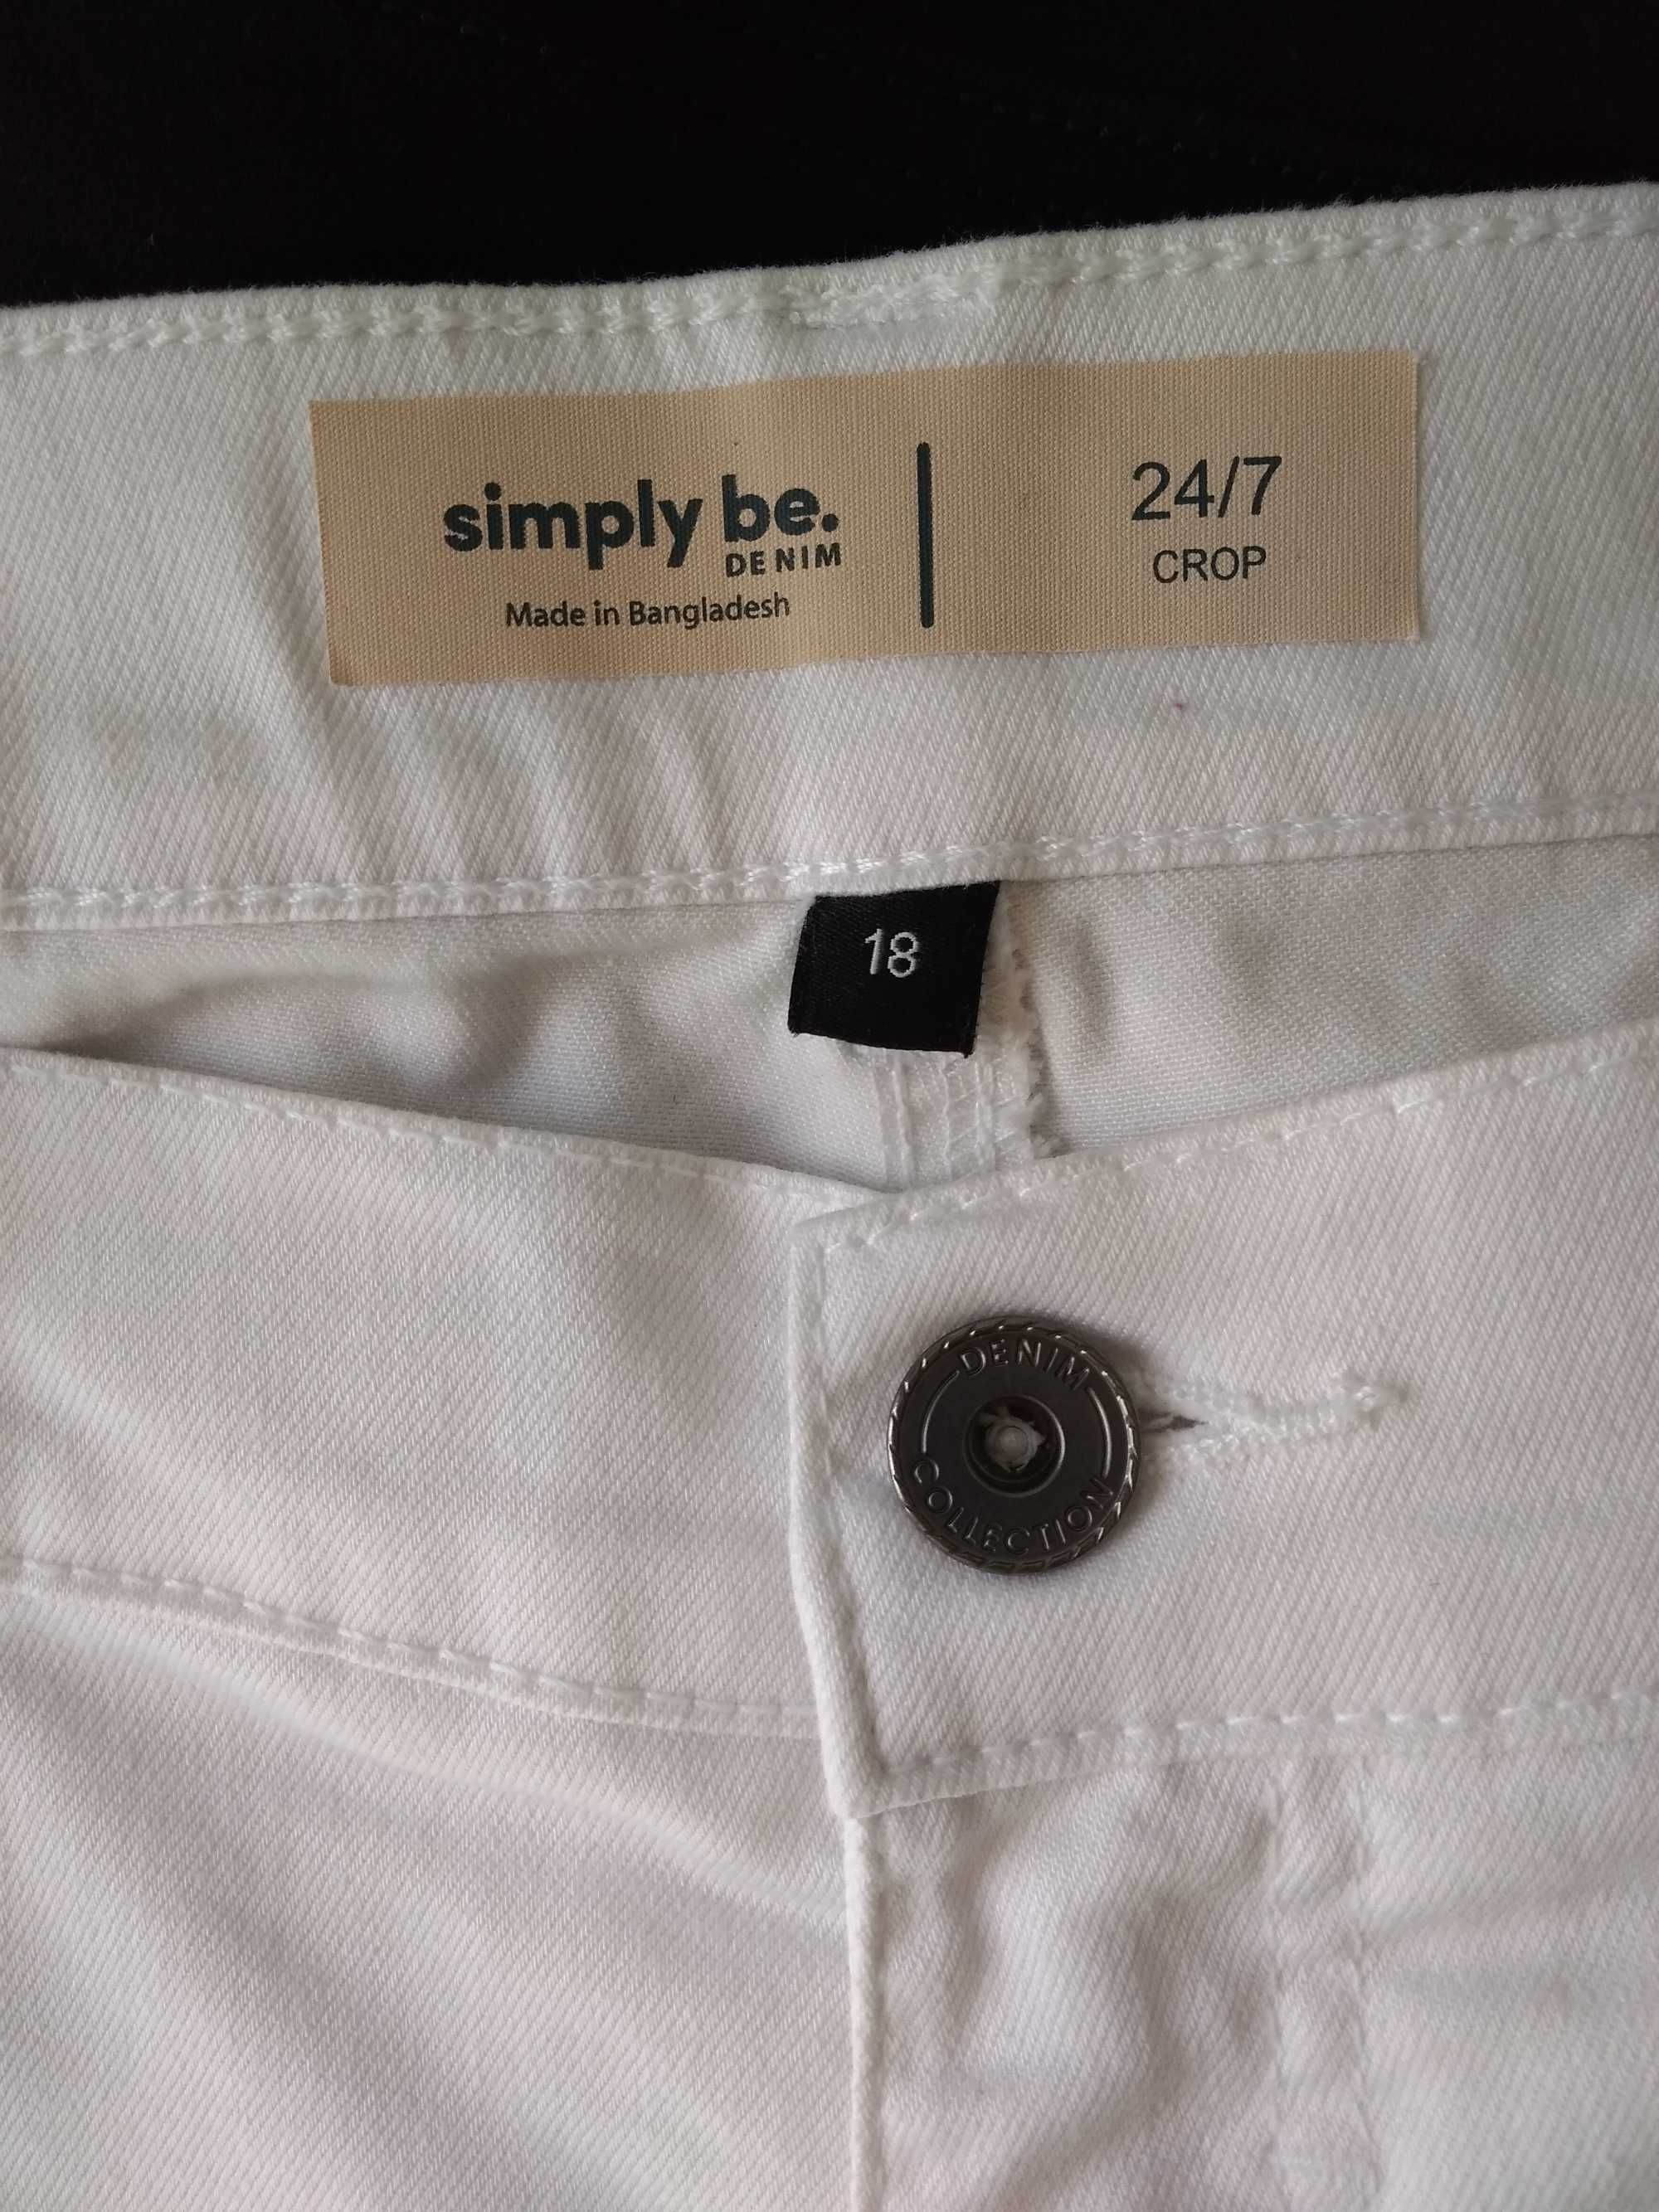 р 18 / 52-54 белые джинсовые капри бриджи стрейчевые батал большие